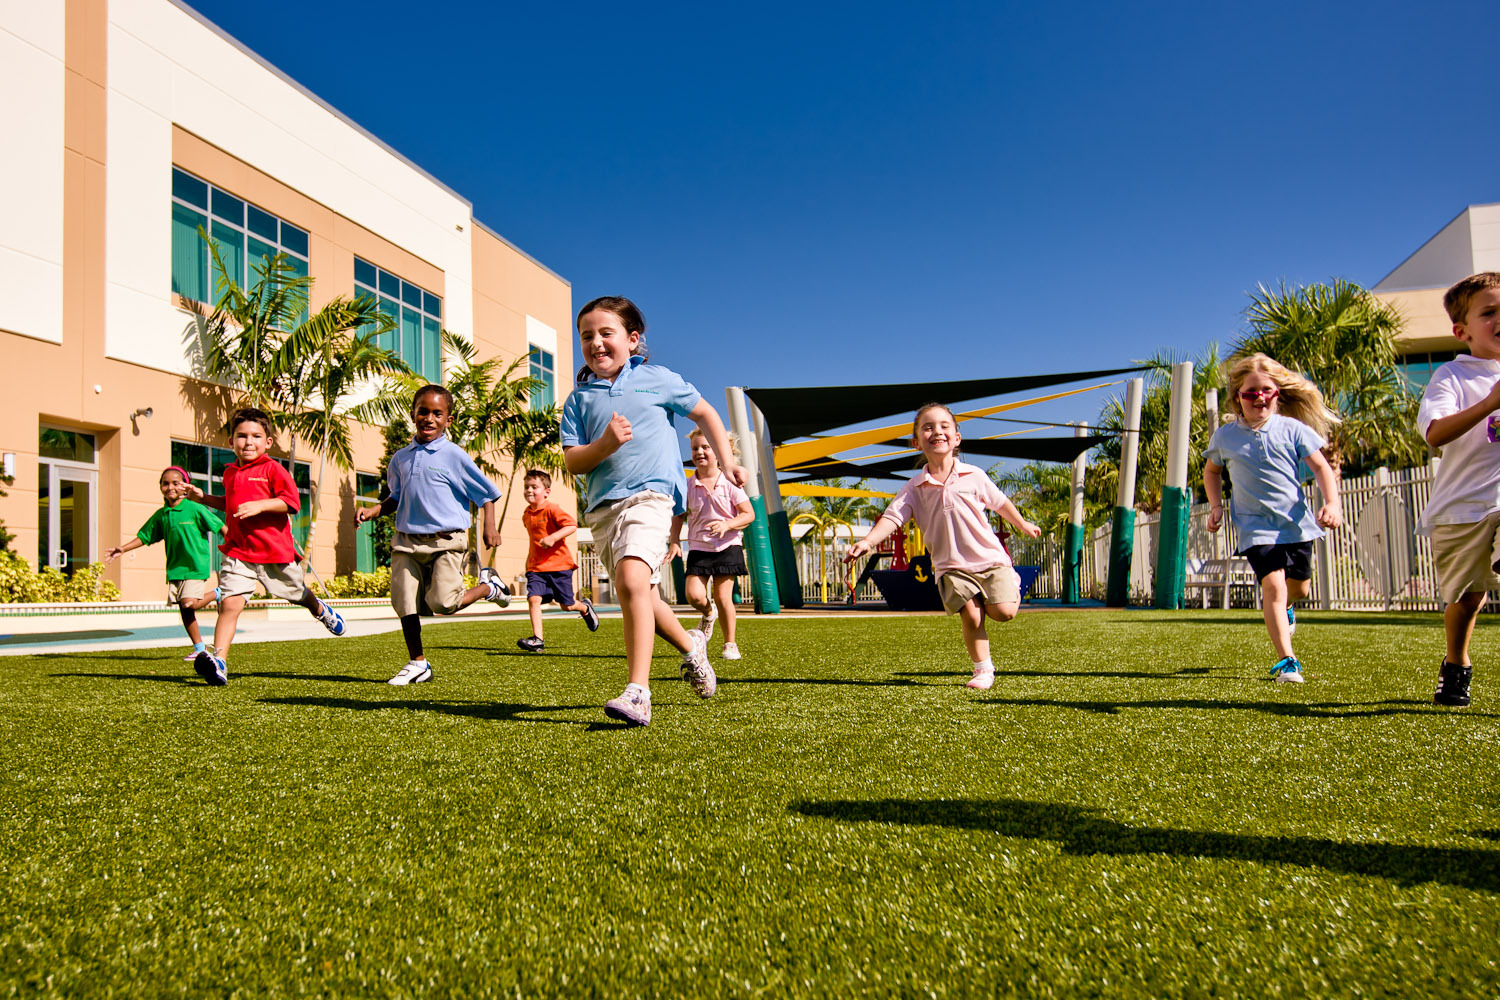 Παιδιά: Η φυσική δραστηριότητα και η καθιστική συμπεριφορά